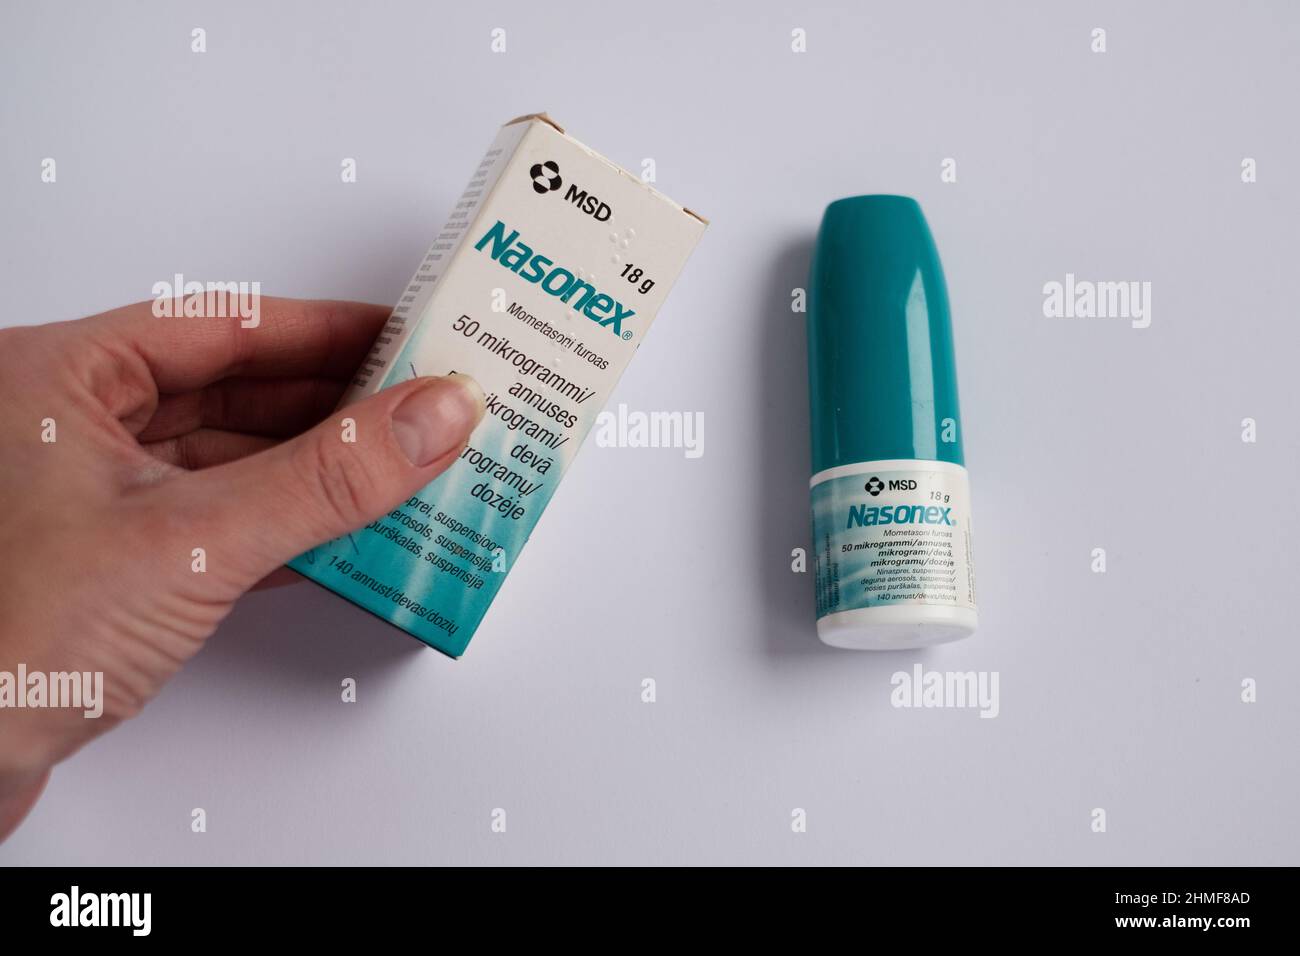 Tout est question de Achat Slimex 15 mg Passer La Commande En Pharmacie